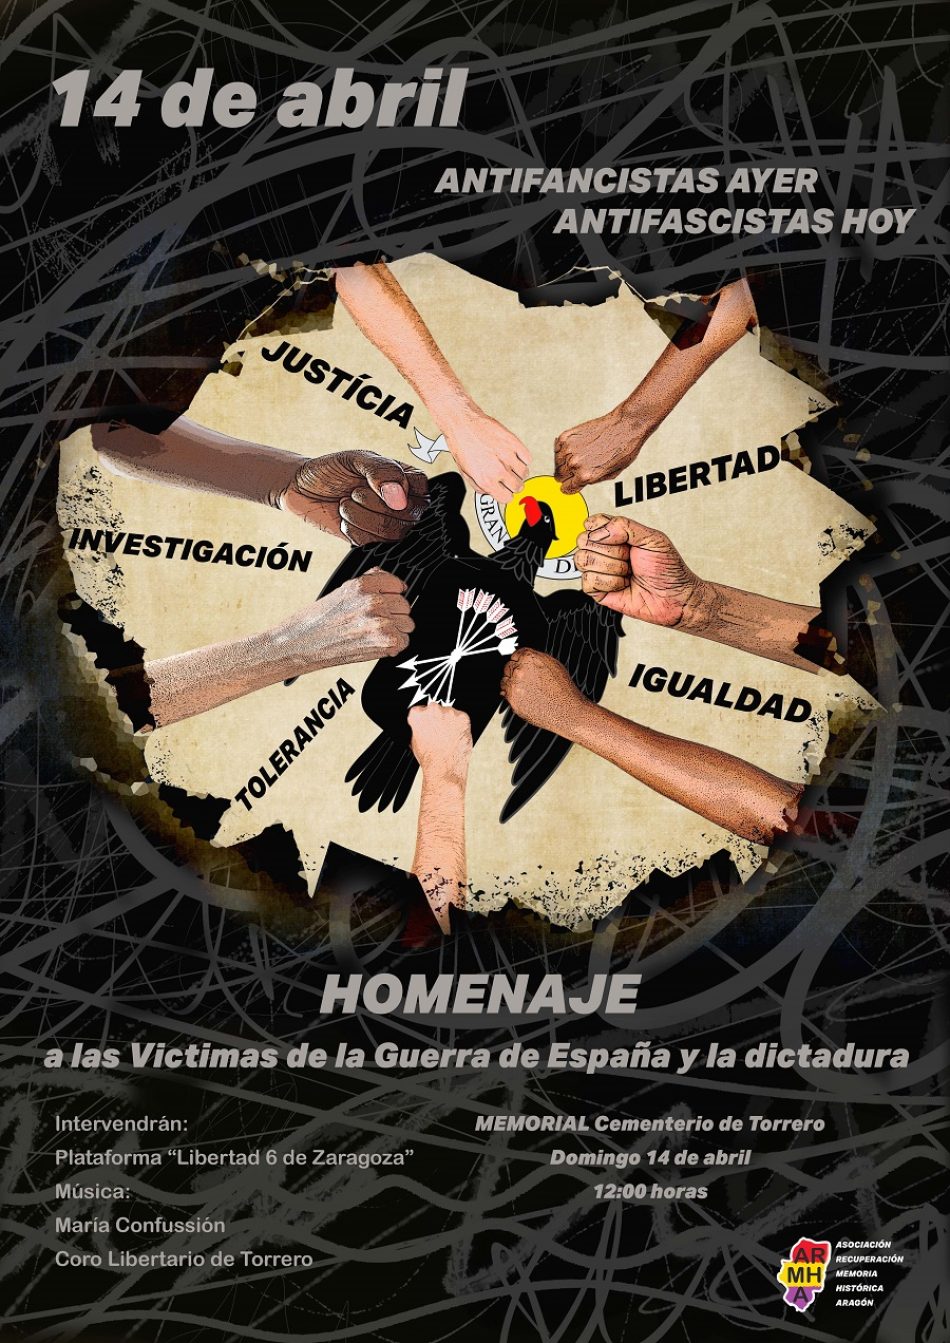 Acto de homenaje en memoria de las víctimas de la Guerra Española y la dictadura franquista en Zaragoza: 14 de abril